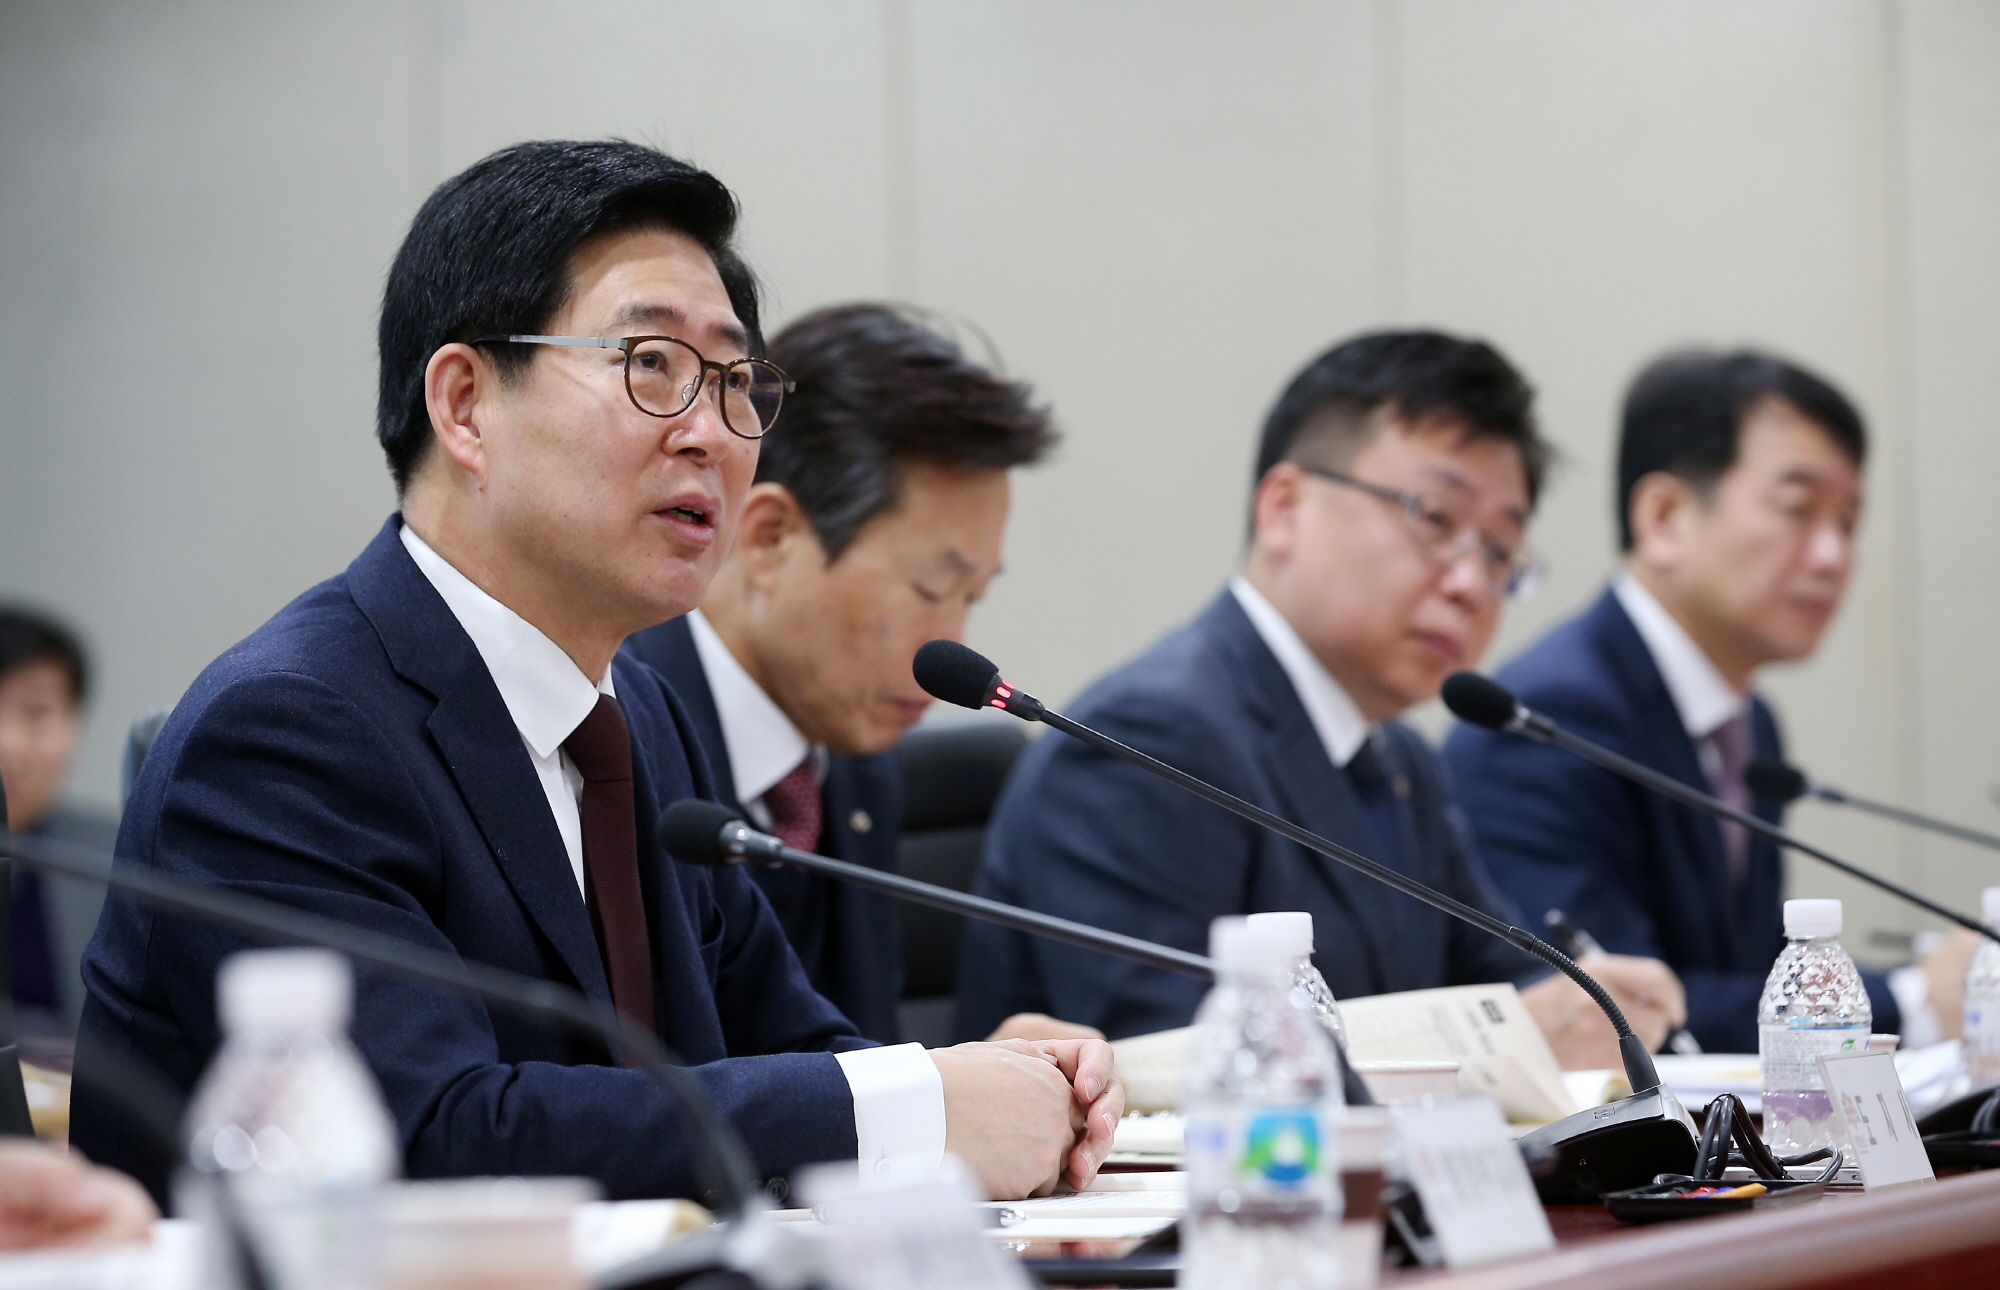 양승조 충남지사, 대한민국 중심 도약 사업소도 힘 보탠다